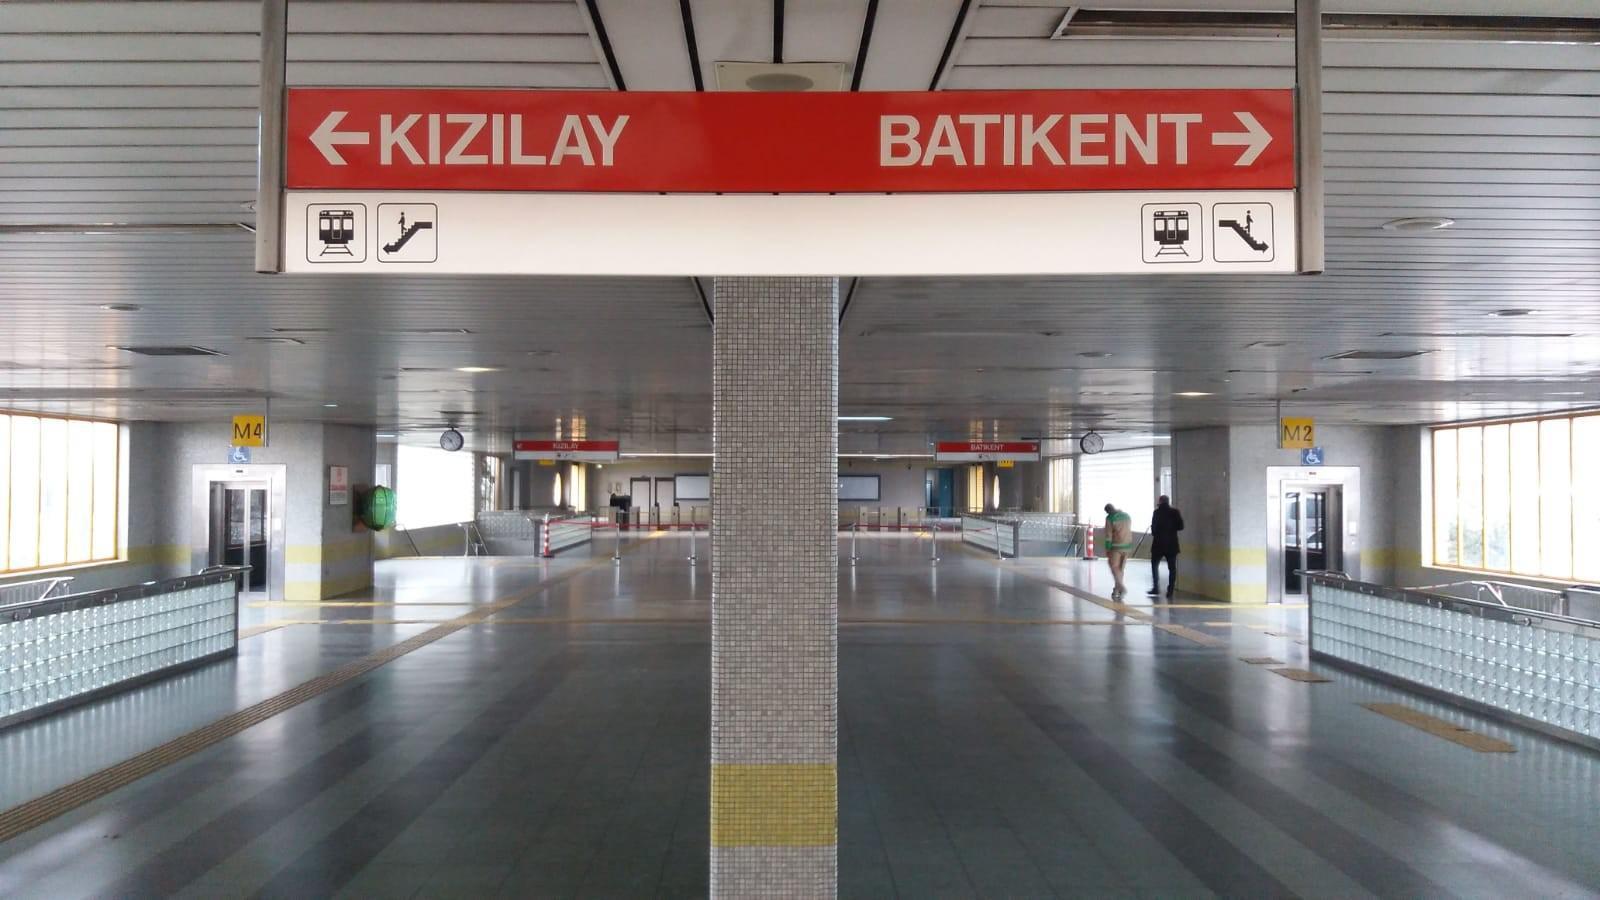 Ankarada korkunç olay Metronun önüne atlayarak canına kıydı